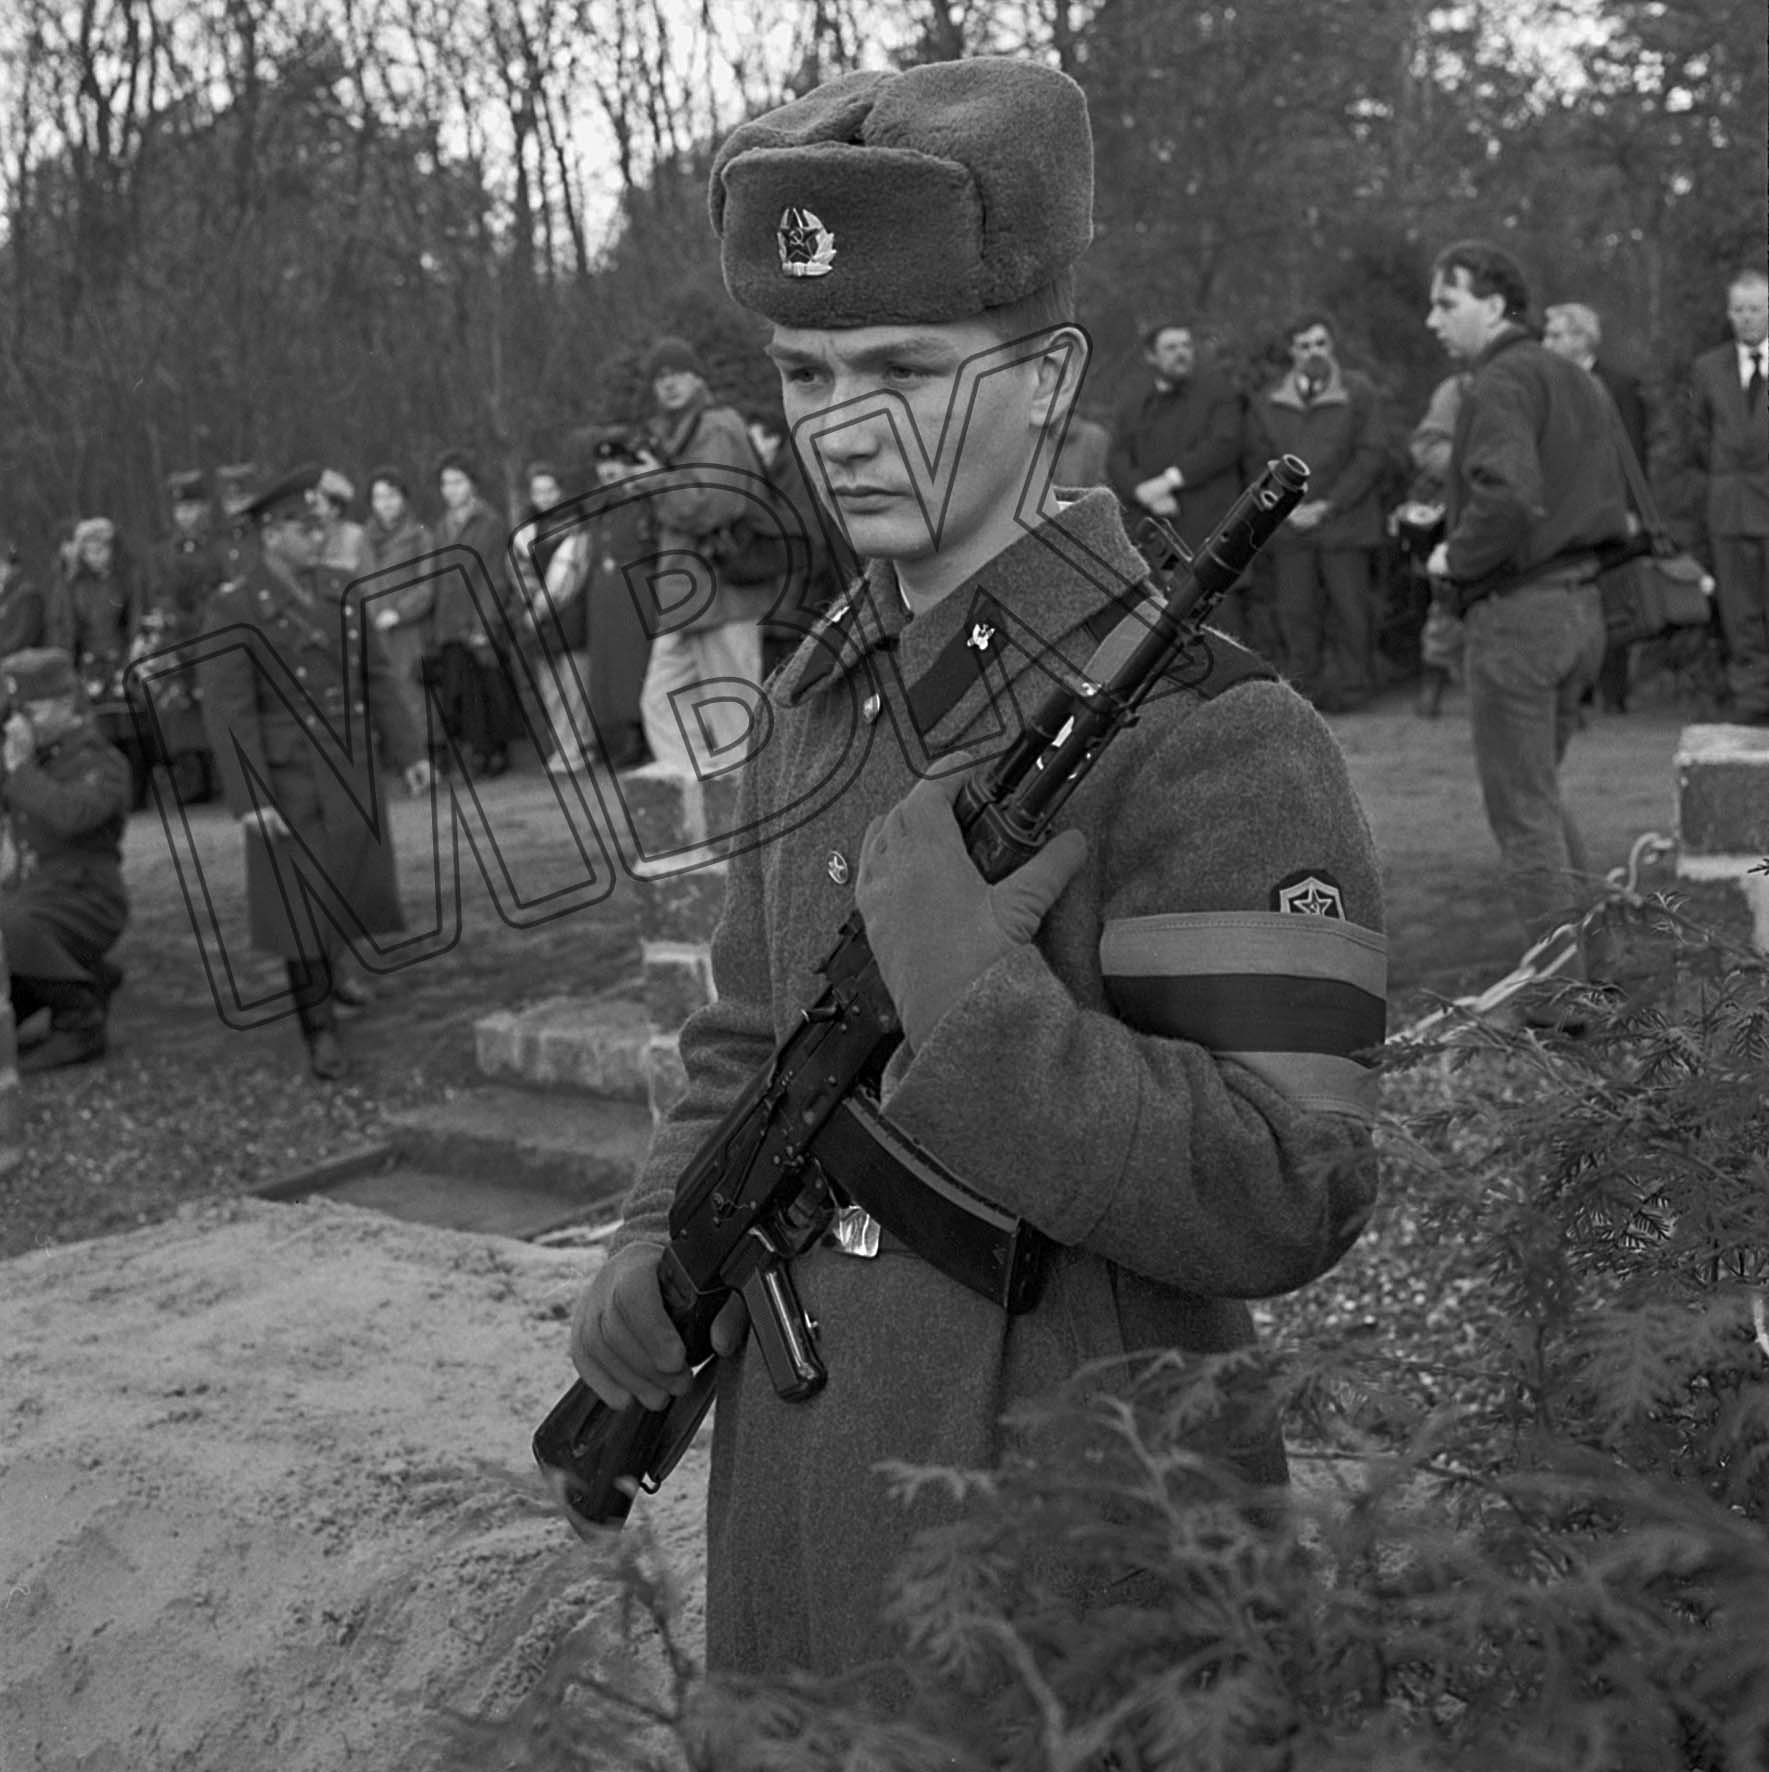 Fotografie: Umbettung von sowjetischen Gefallenen auf den Dorffriedhof, Briesen, Dezember 1992 (Museum Berlin-Karlshorst RR-P)